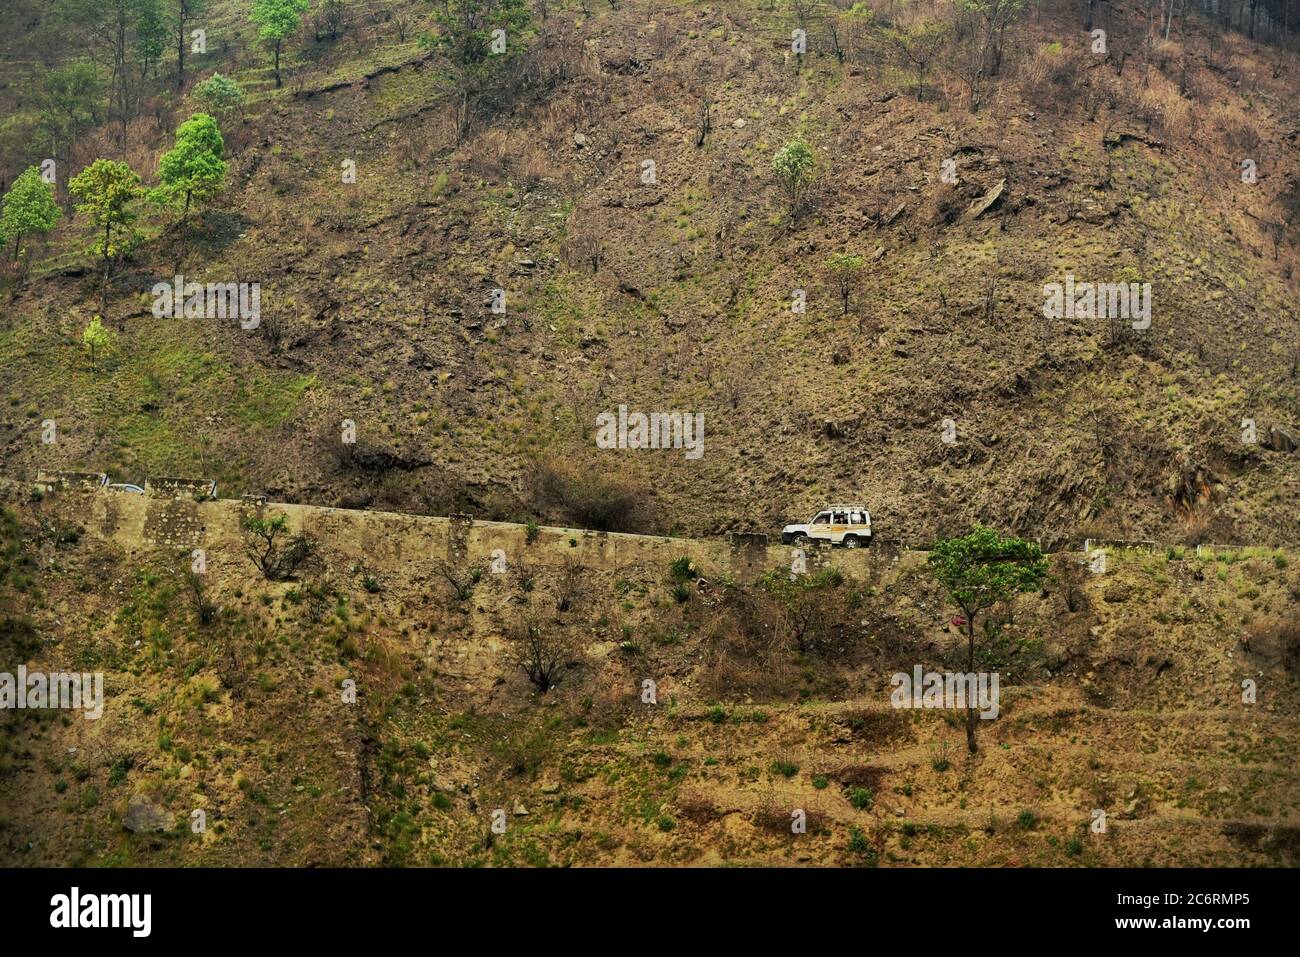 Véhicule qui se déplace sur une route, qui fait partie du réseau routier stratégique (SRN) du Népal, qui s'est établi sur une pente abrupte à la limite de la vallée de Katmandou, à la périphérie de la ville de Katmandou, au Népal. Photo d'archives (2016). Le réseau routier au Népal a subi des dommages modérés à la suite du tremblement de terre de 2015. Le montant total des dommages estimés au réseau routier stratégique (SRN) s'élevait à 45.9 millions de dollars, tandis que les pertes totales étaient estimées à 5.26 millions de dollars. Sur le réseau routier local (RRN), le montant total des dommages estimés était de 124.85 millions de dollars, tandis que les pertes totales étaient de 42.74 millions de dollars. Banque D'Images